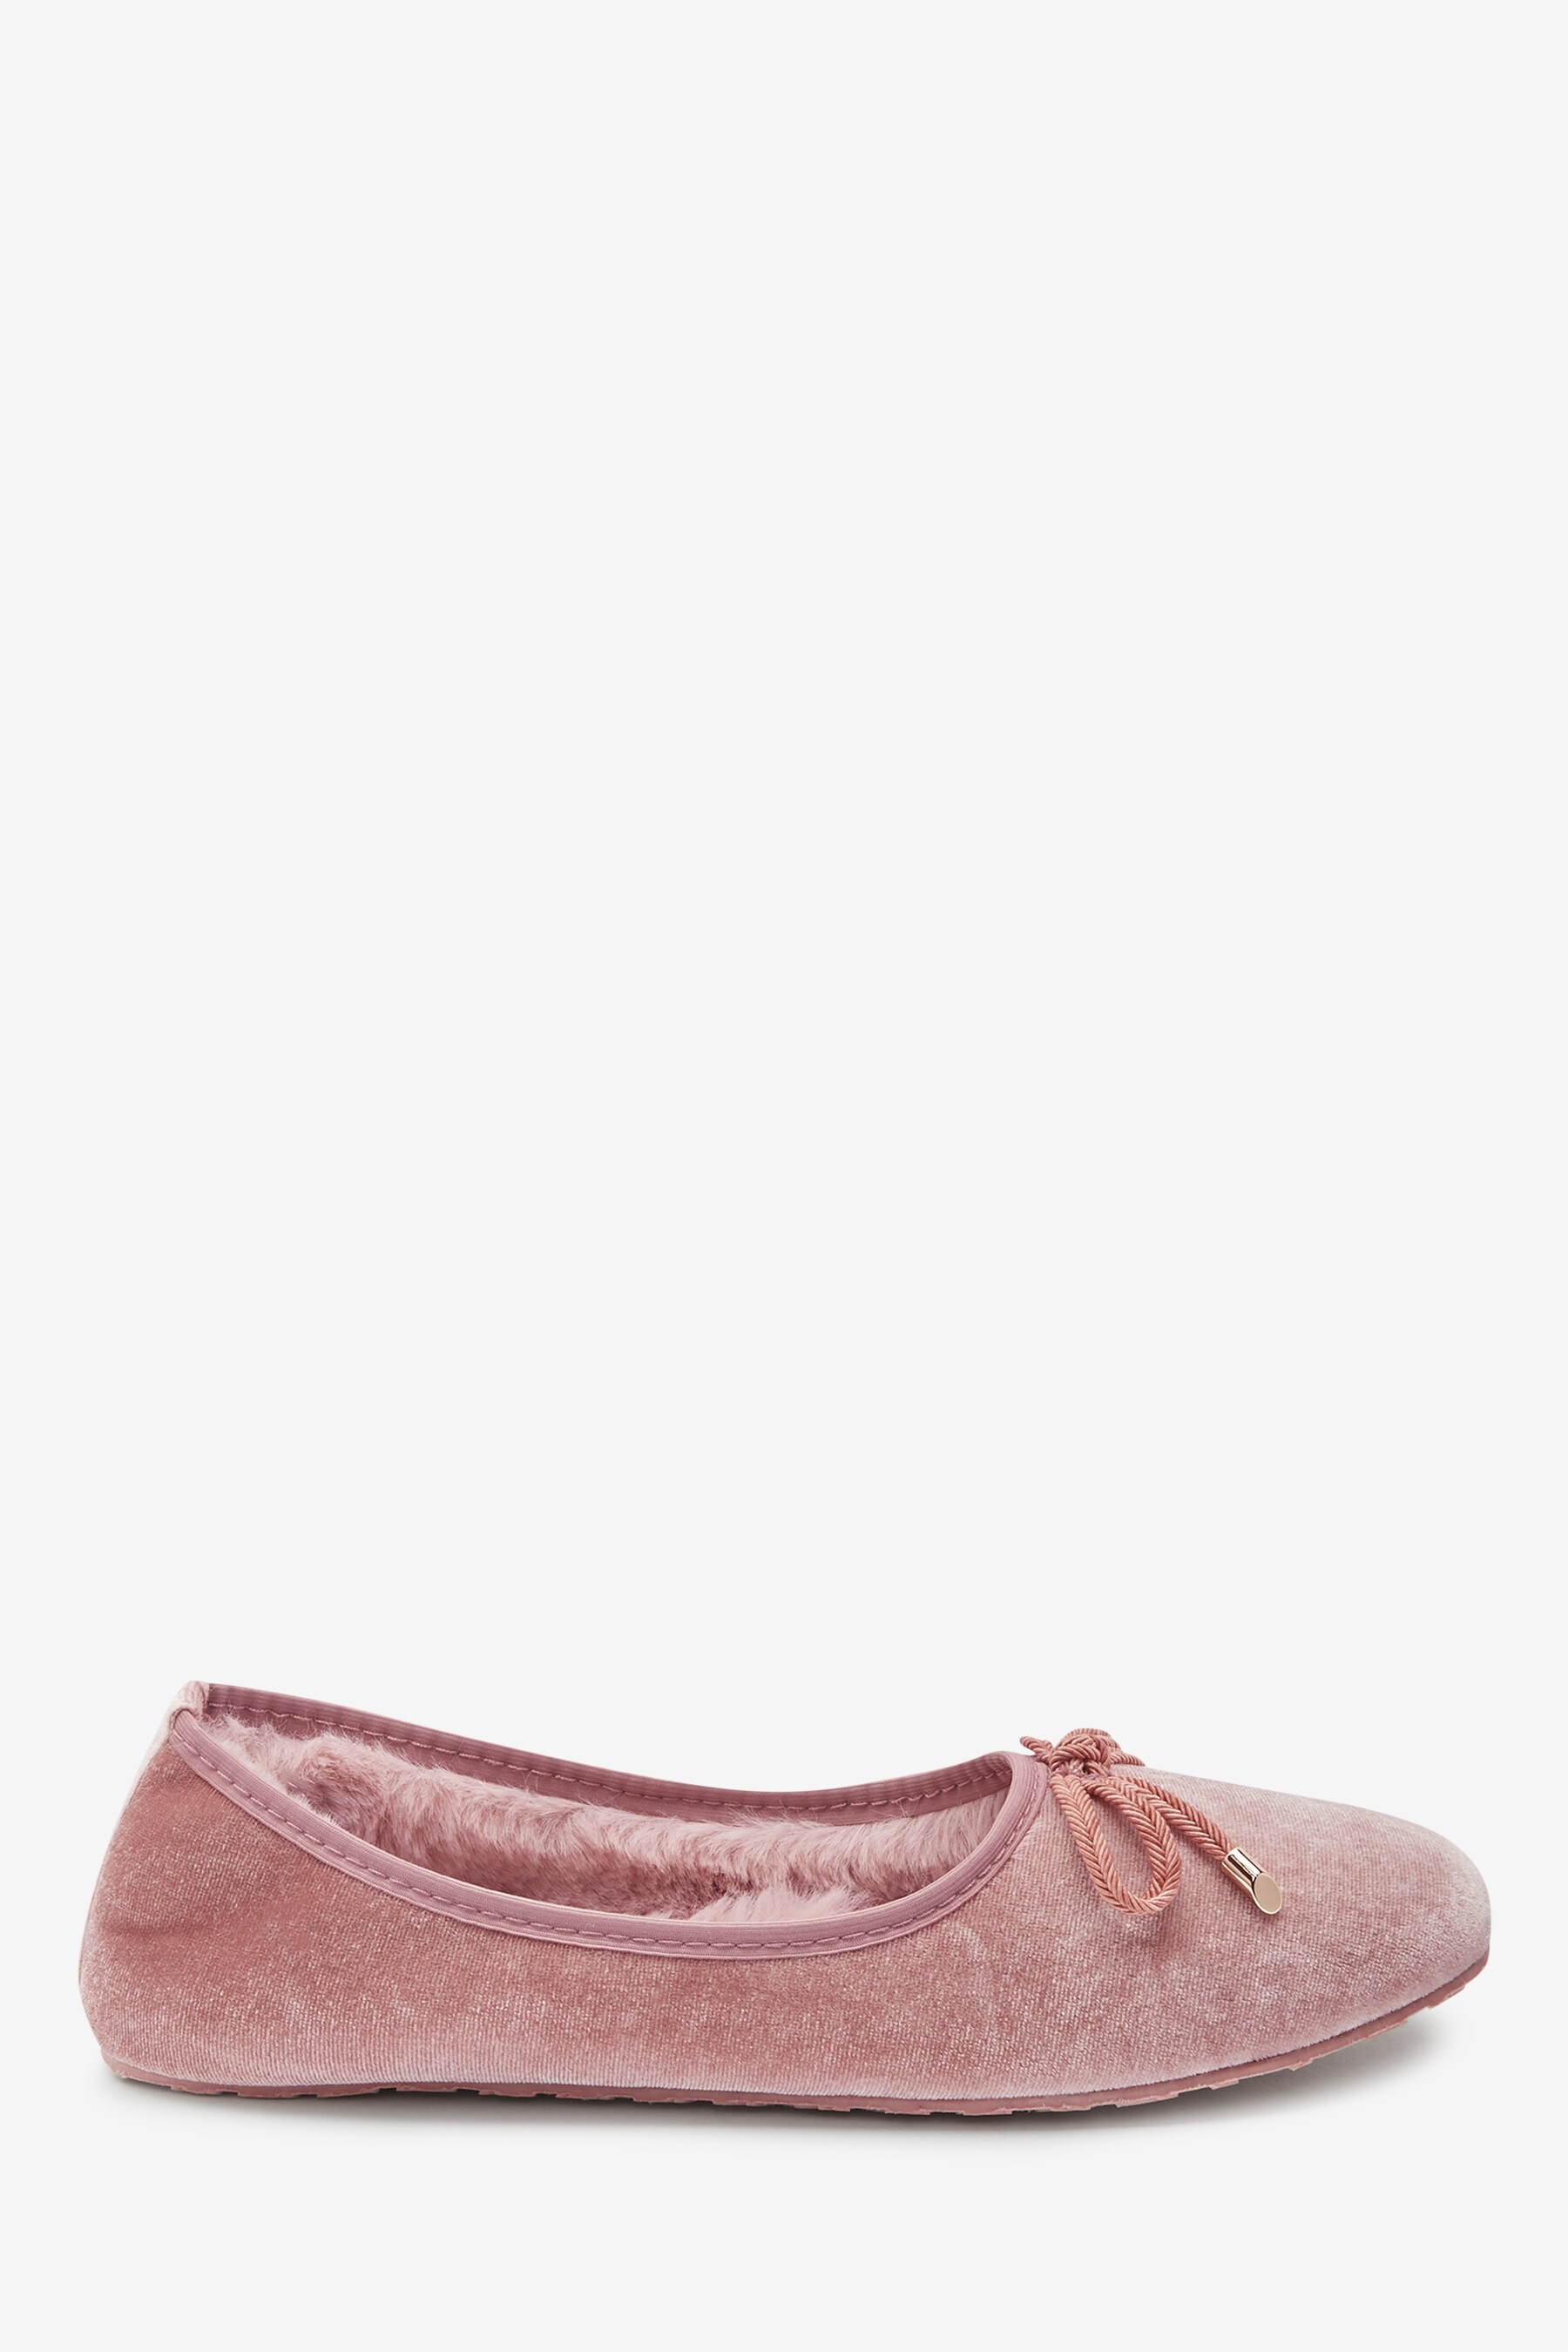 Buy Pink Velvet Ballerina Slippers from the Next UK online shop